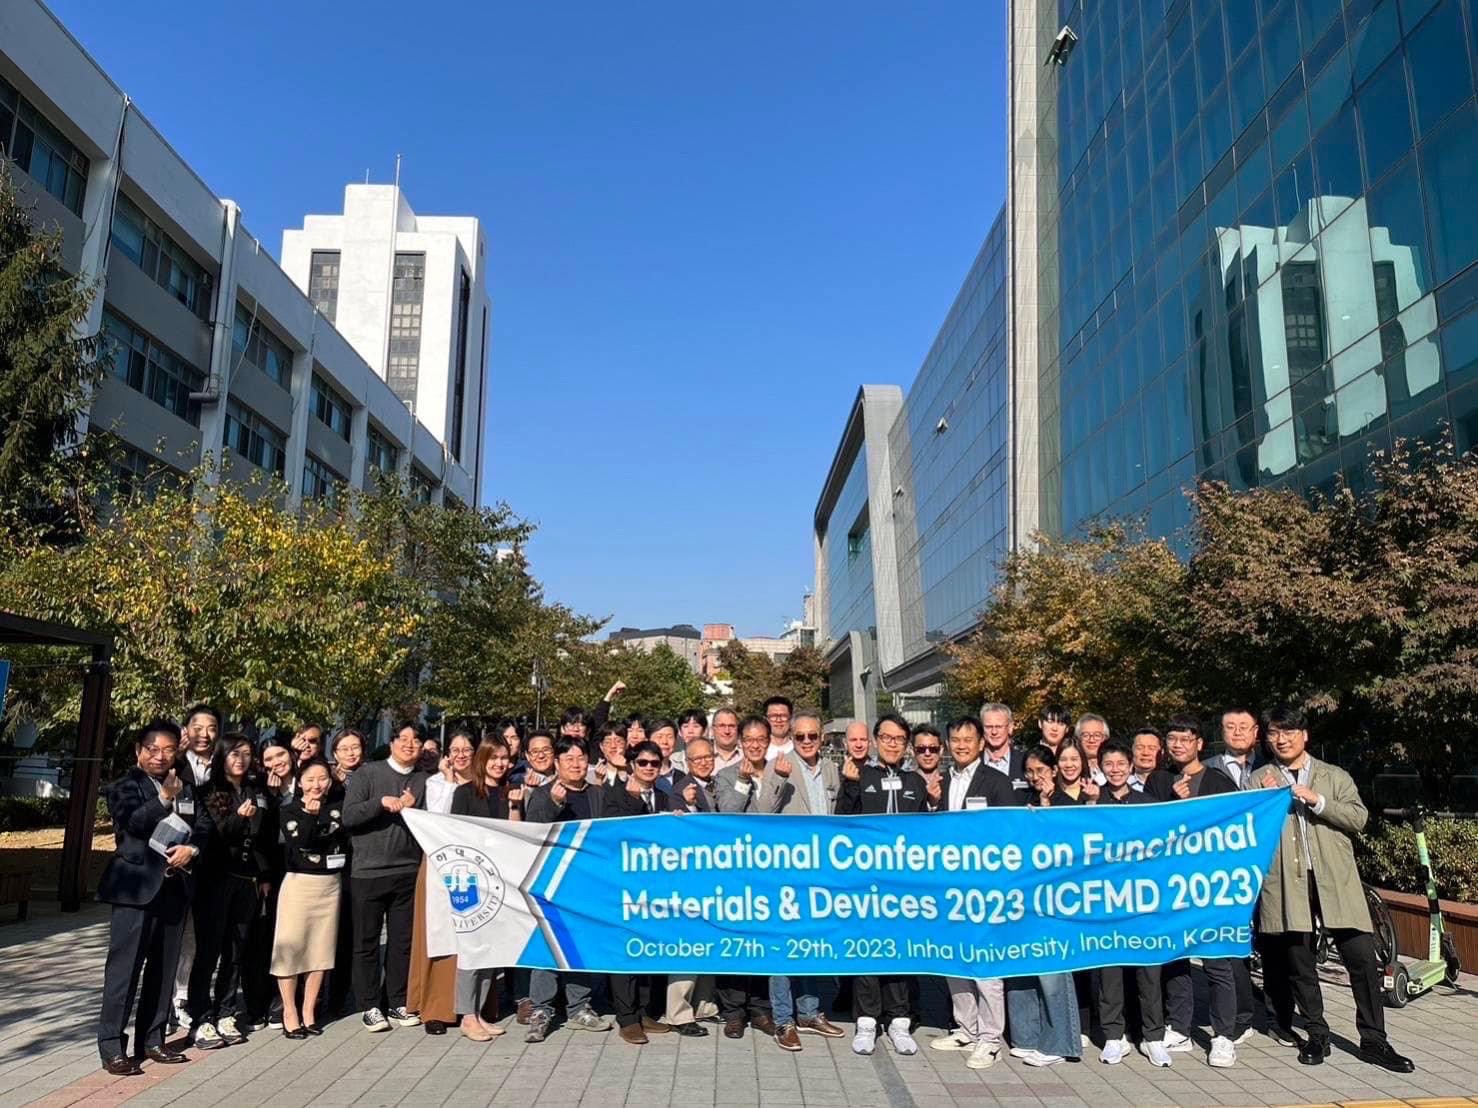 2023-10-27 นักศึกษาปริญญาเอก คณะเทคนิคการแพทย์ได้รับรางวัล The Best Paper Award ในงานประชุม International Conference on Functional Materials & Devices 2023 (ICFMD 2023)